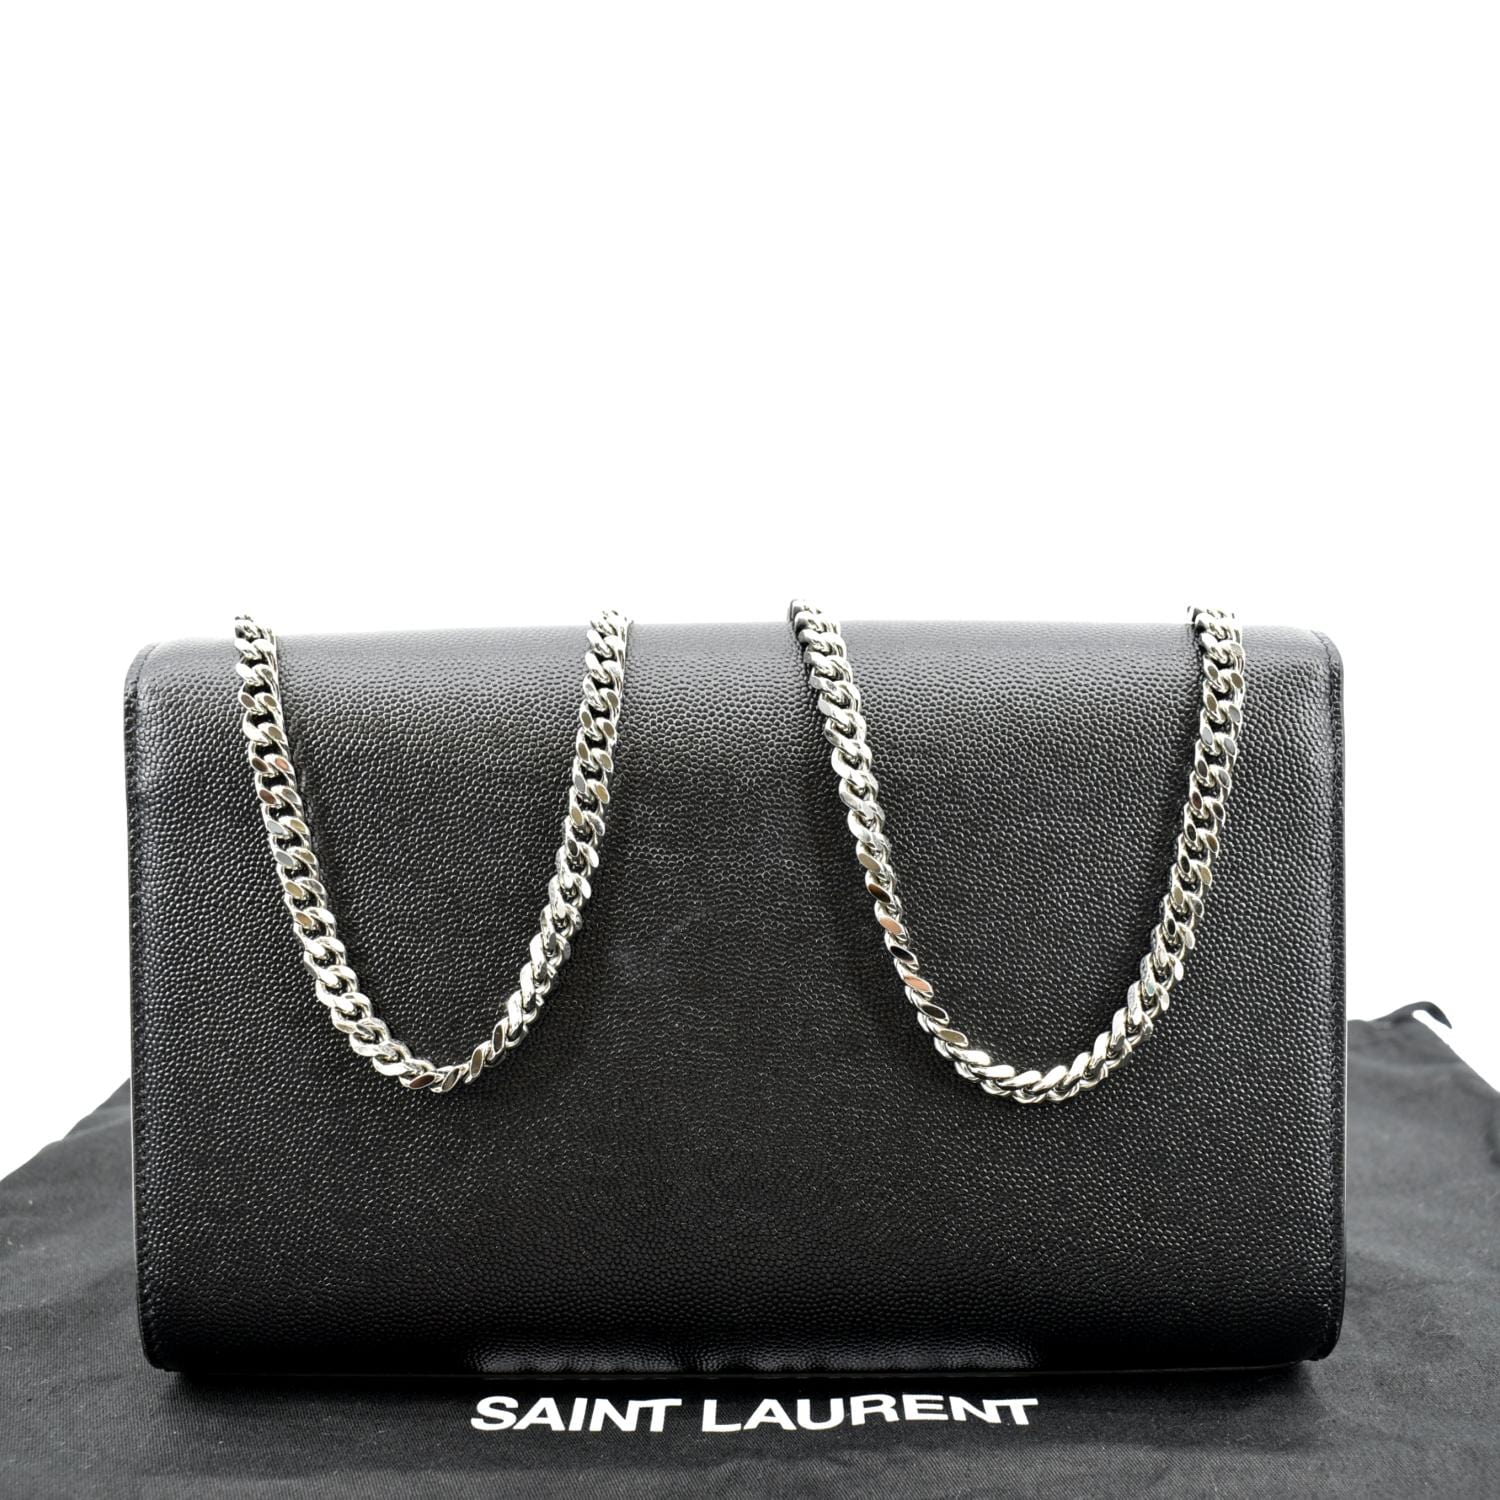 Saint Laurent Kate Medium Grain de Poudre Chain Bag, Black Hardware